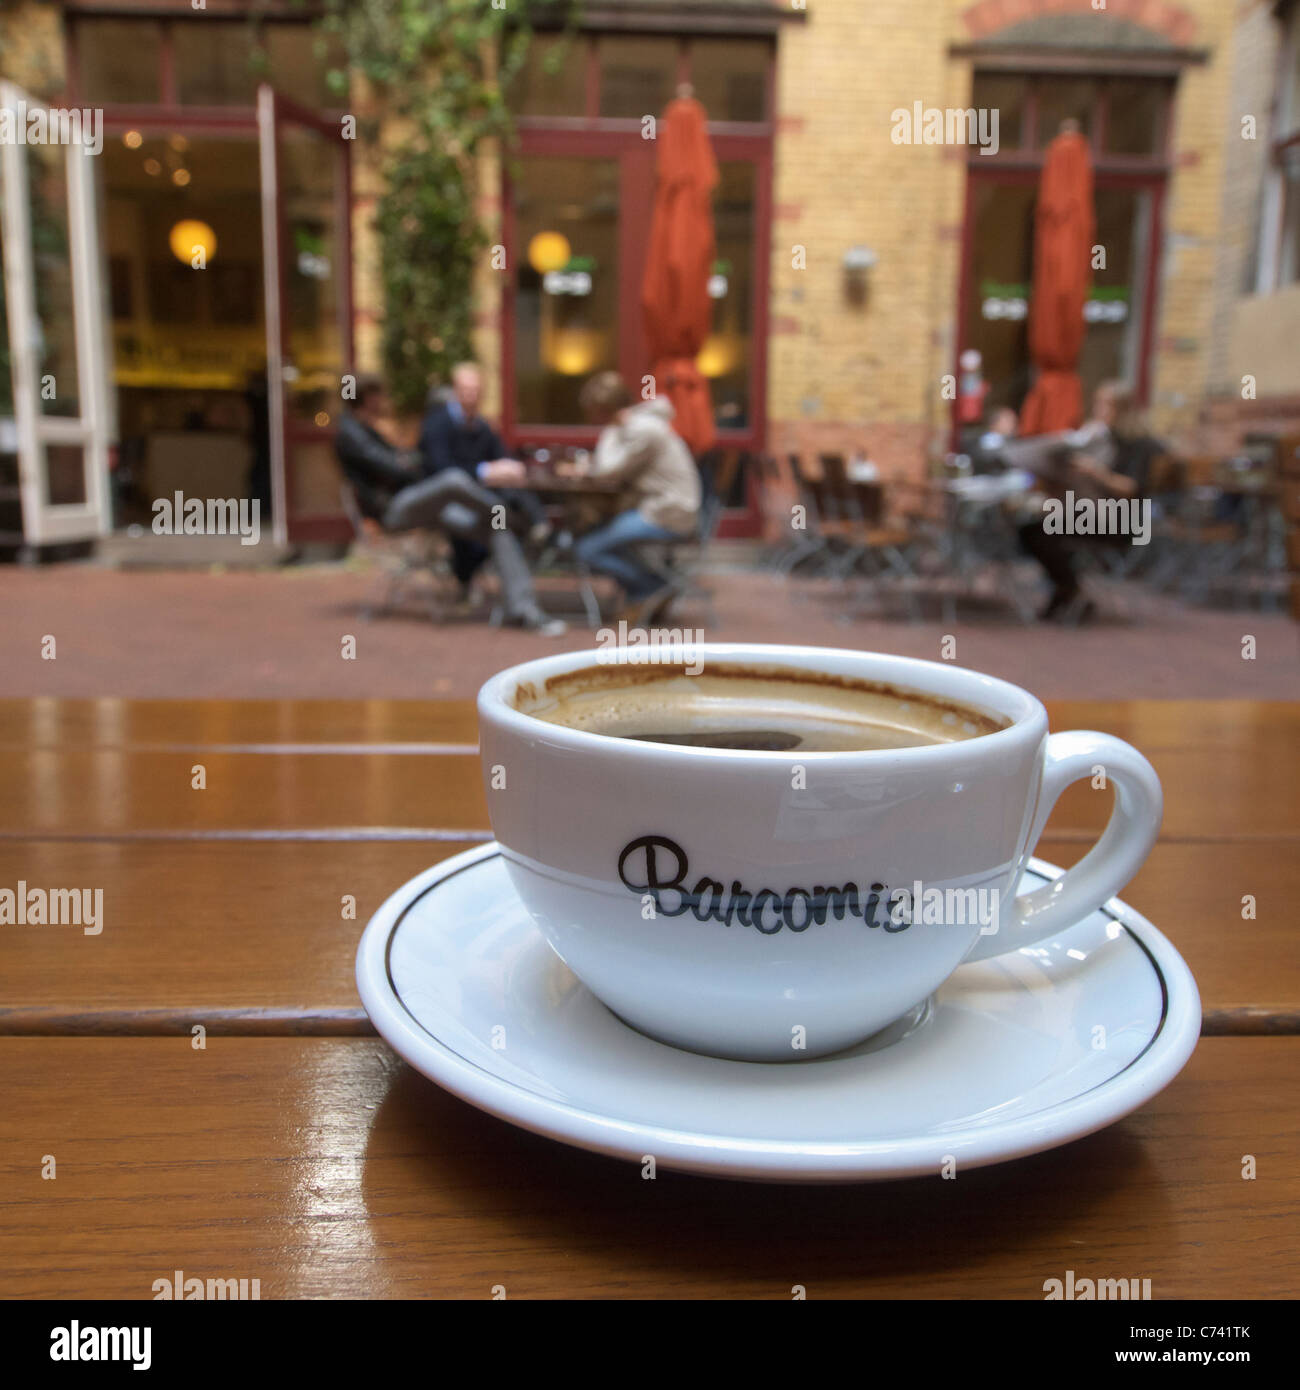 Tazza di caffè a Barcomis cafe nel cortile Sophie-Gips nel quartiere Mitte di Berlino in Germania Foto Stock